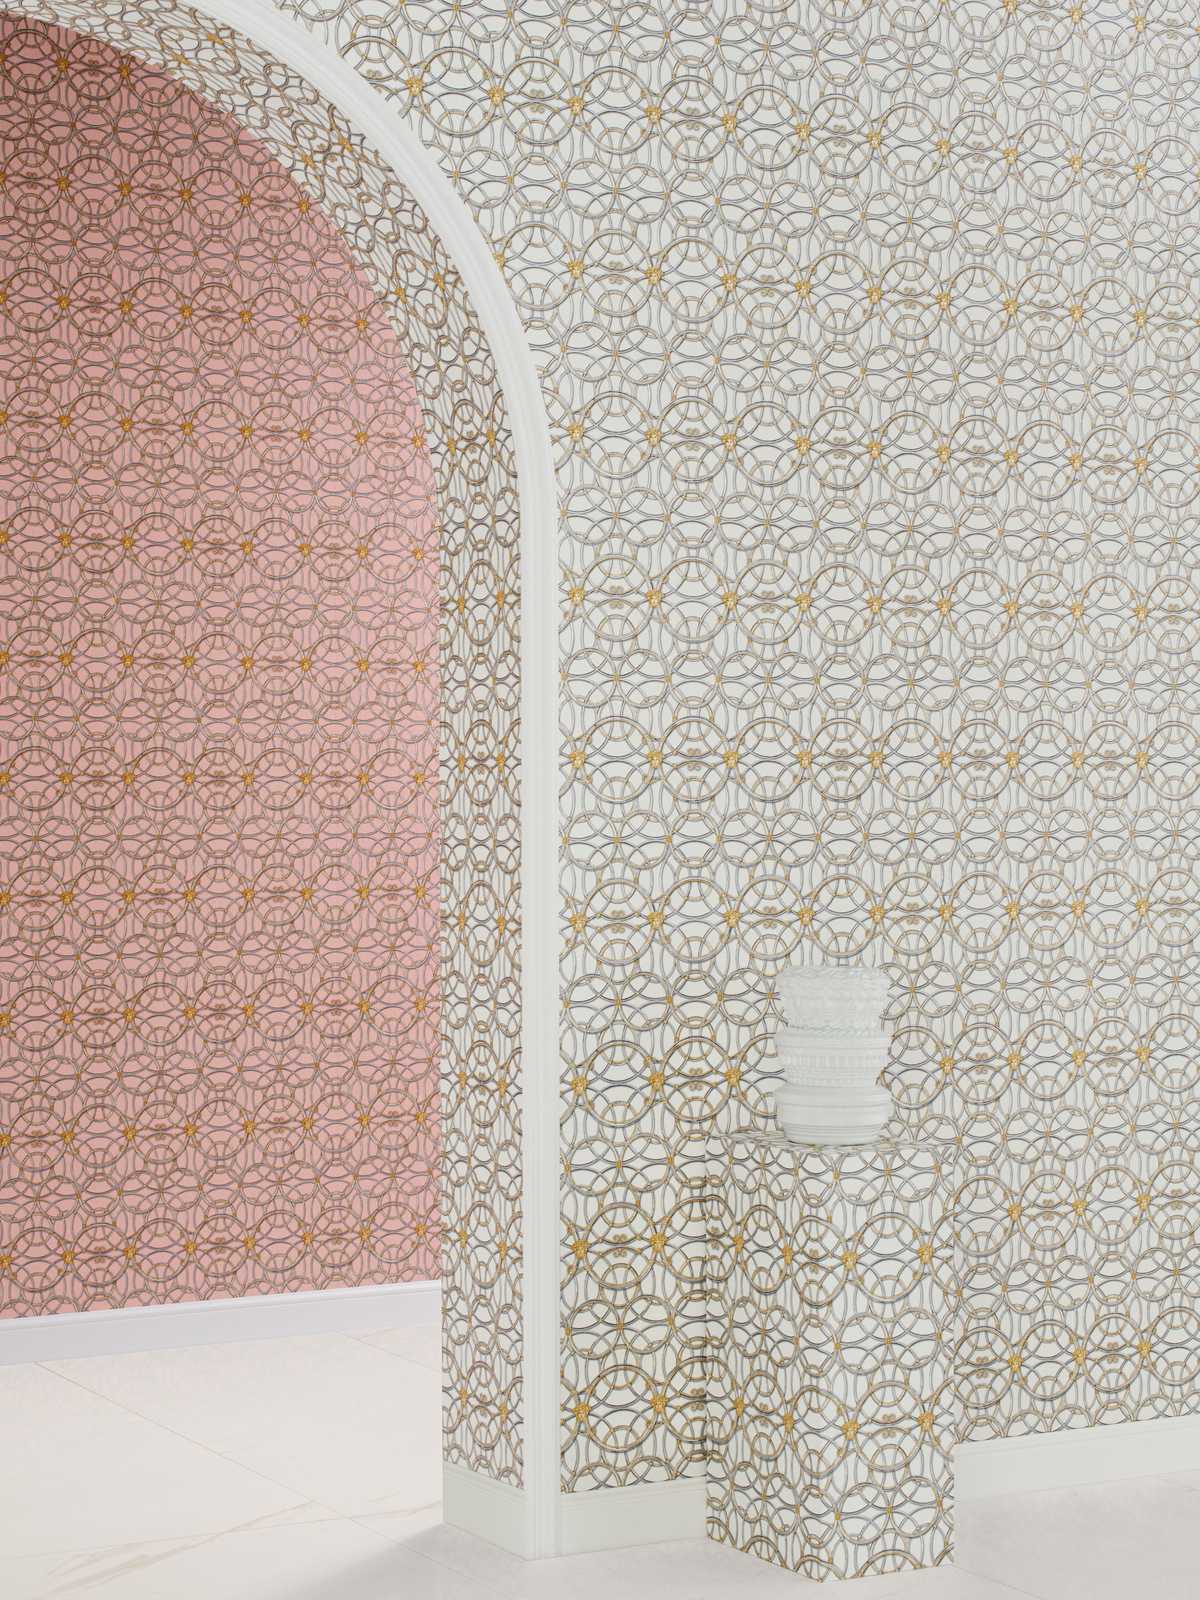             VERSACE Home Papier peint motifs circulaires et Méduse - or, argent, blanc
        